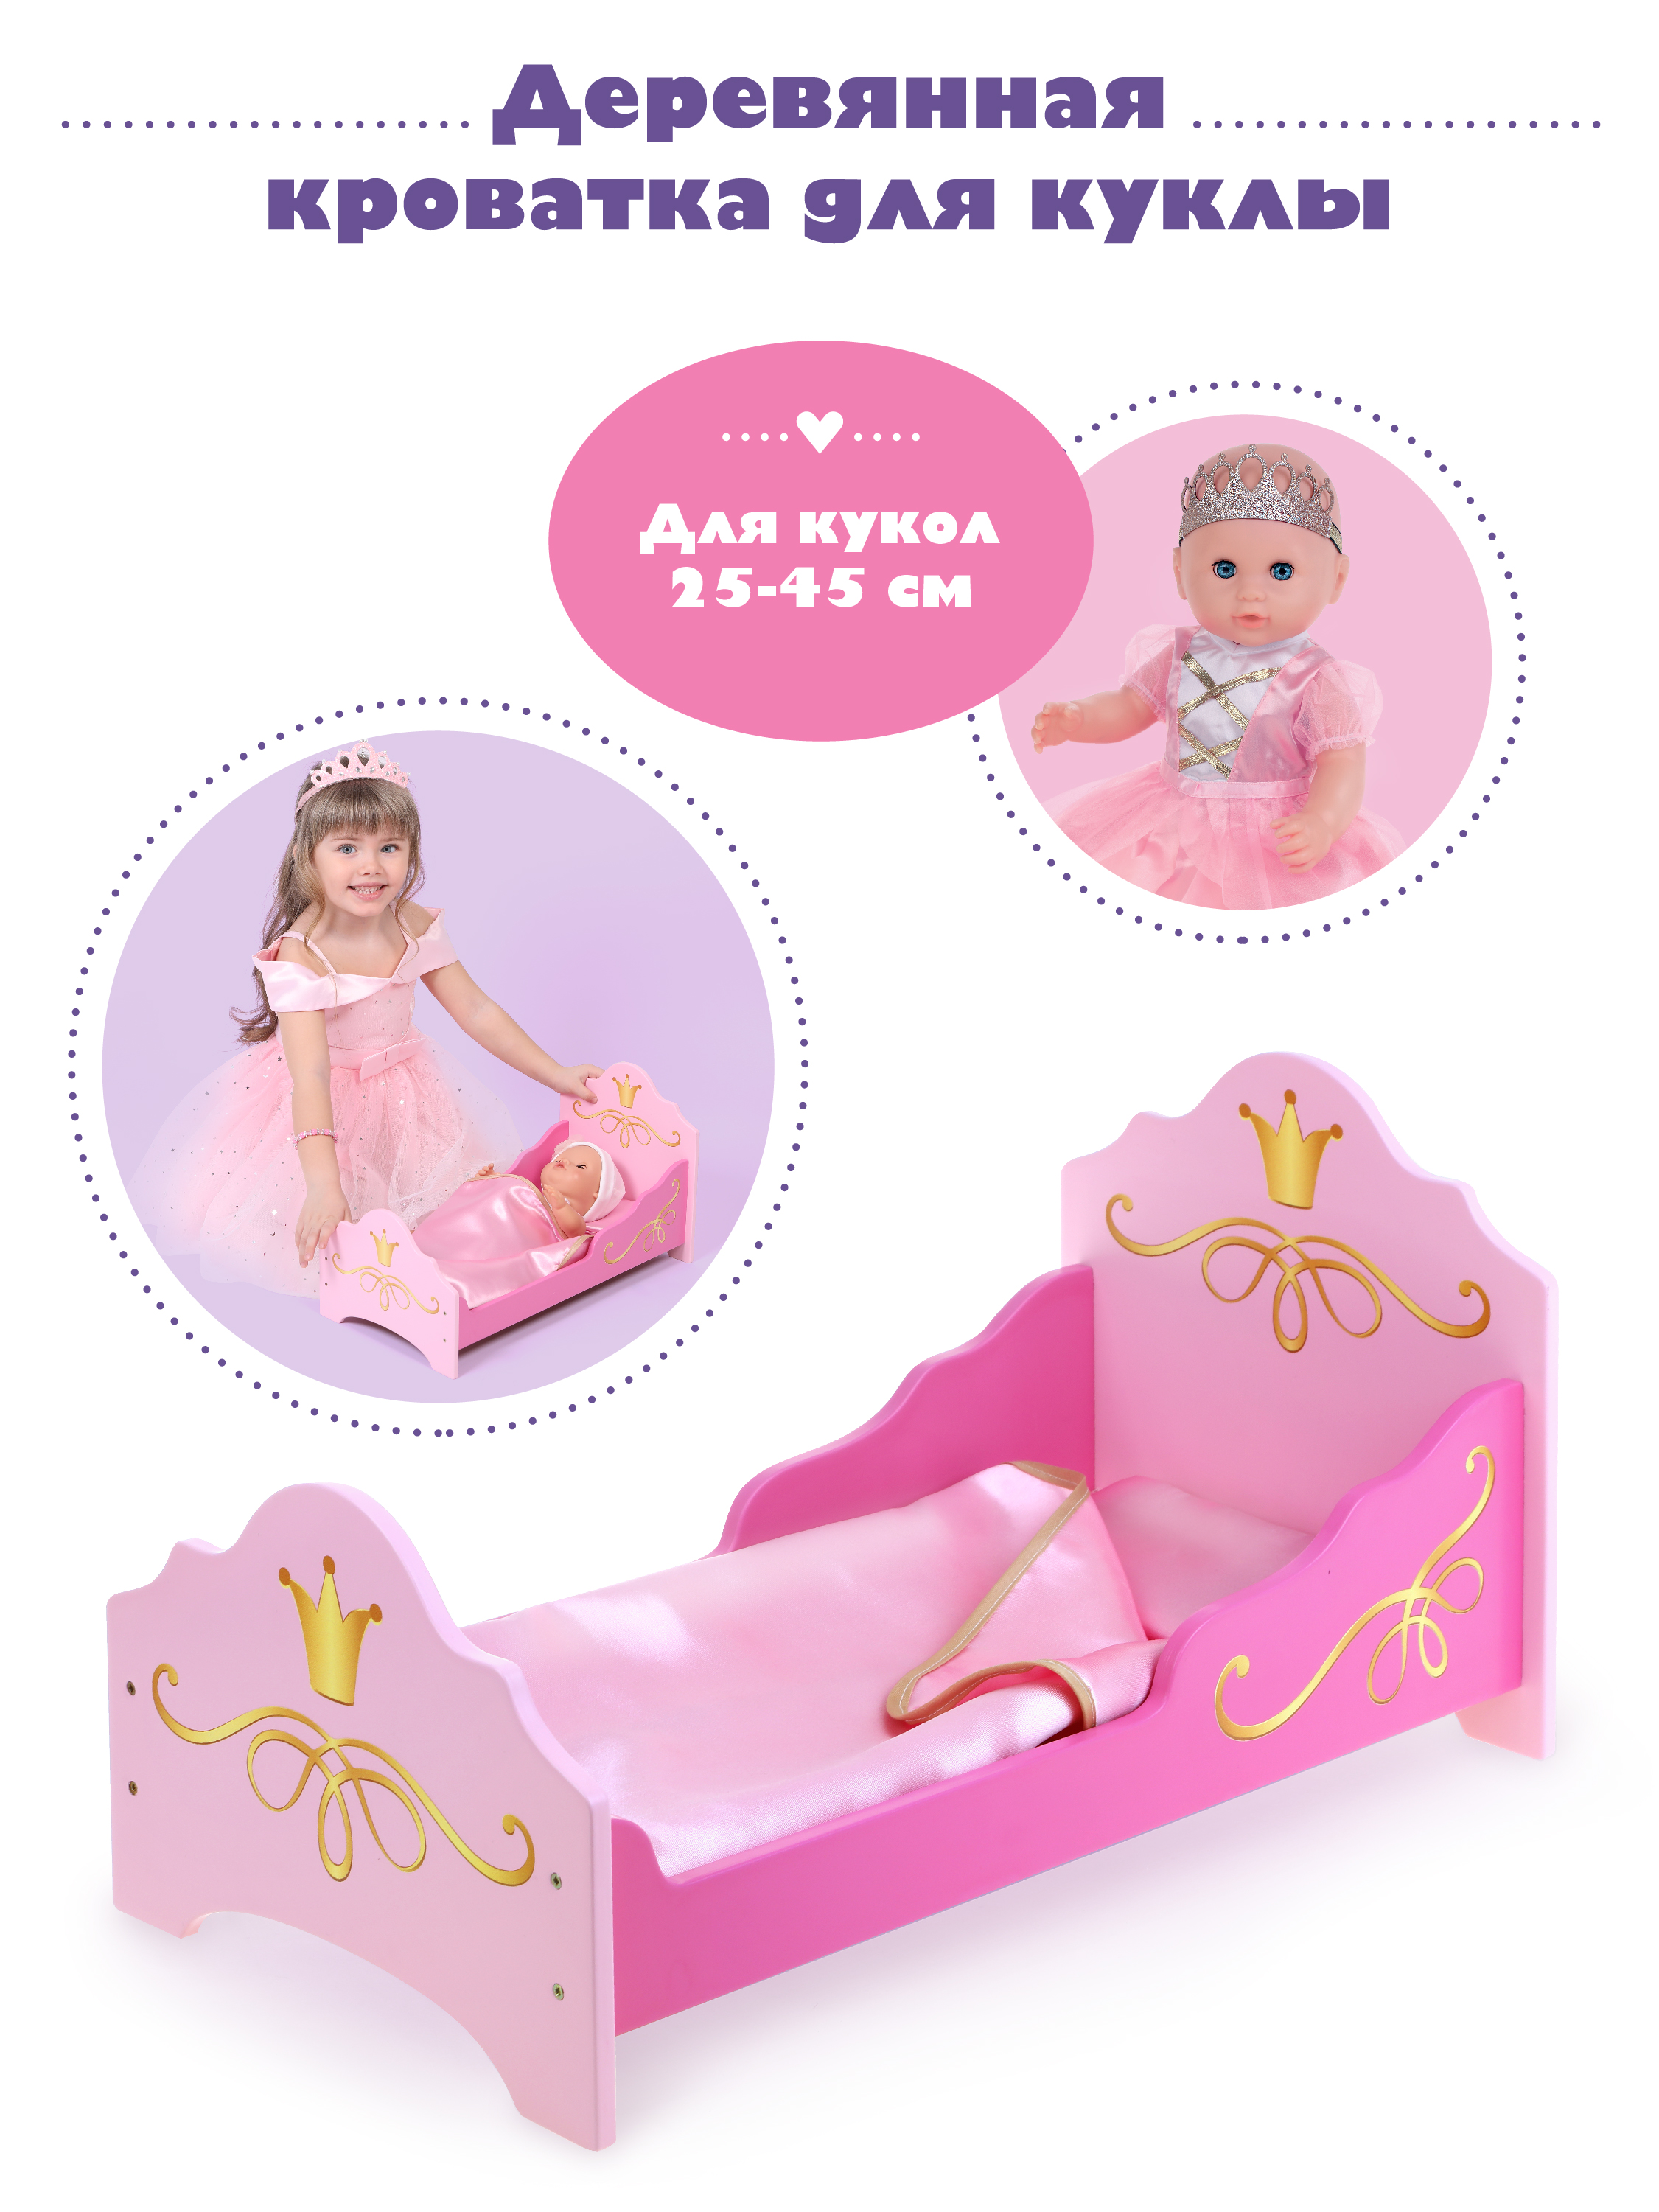 Кроватка для куклы Mary Poppins Принцесса 67398 кроватка для куклы mary poppins двухэтажная принцесса